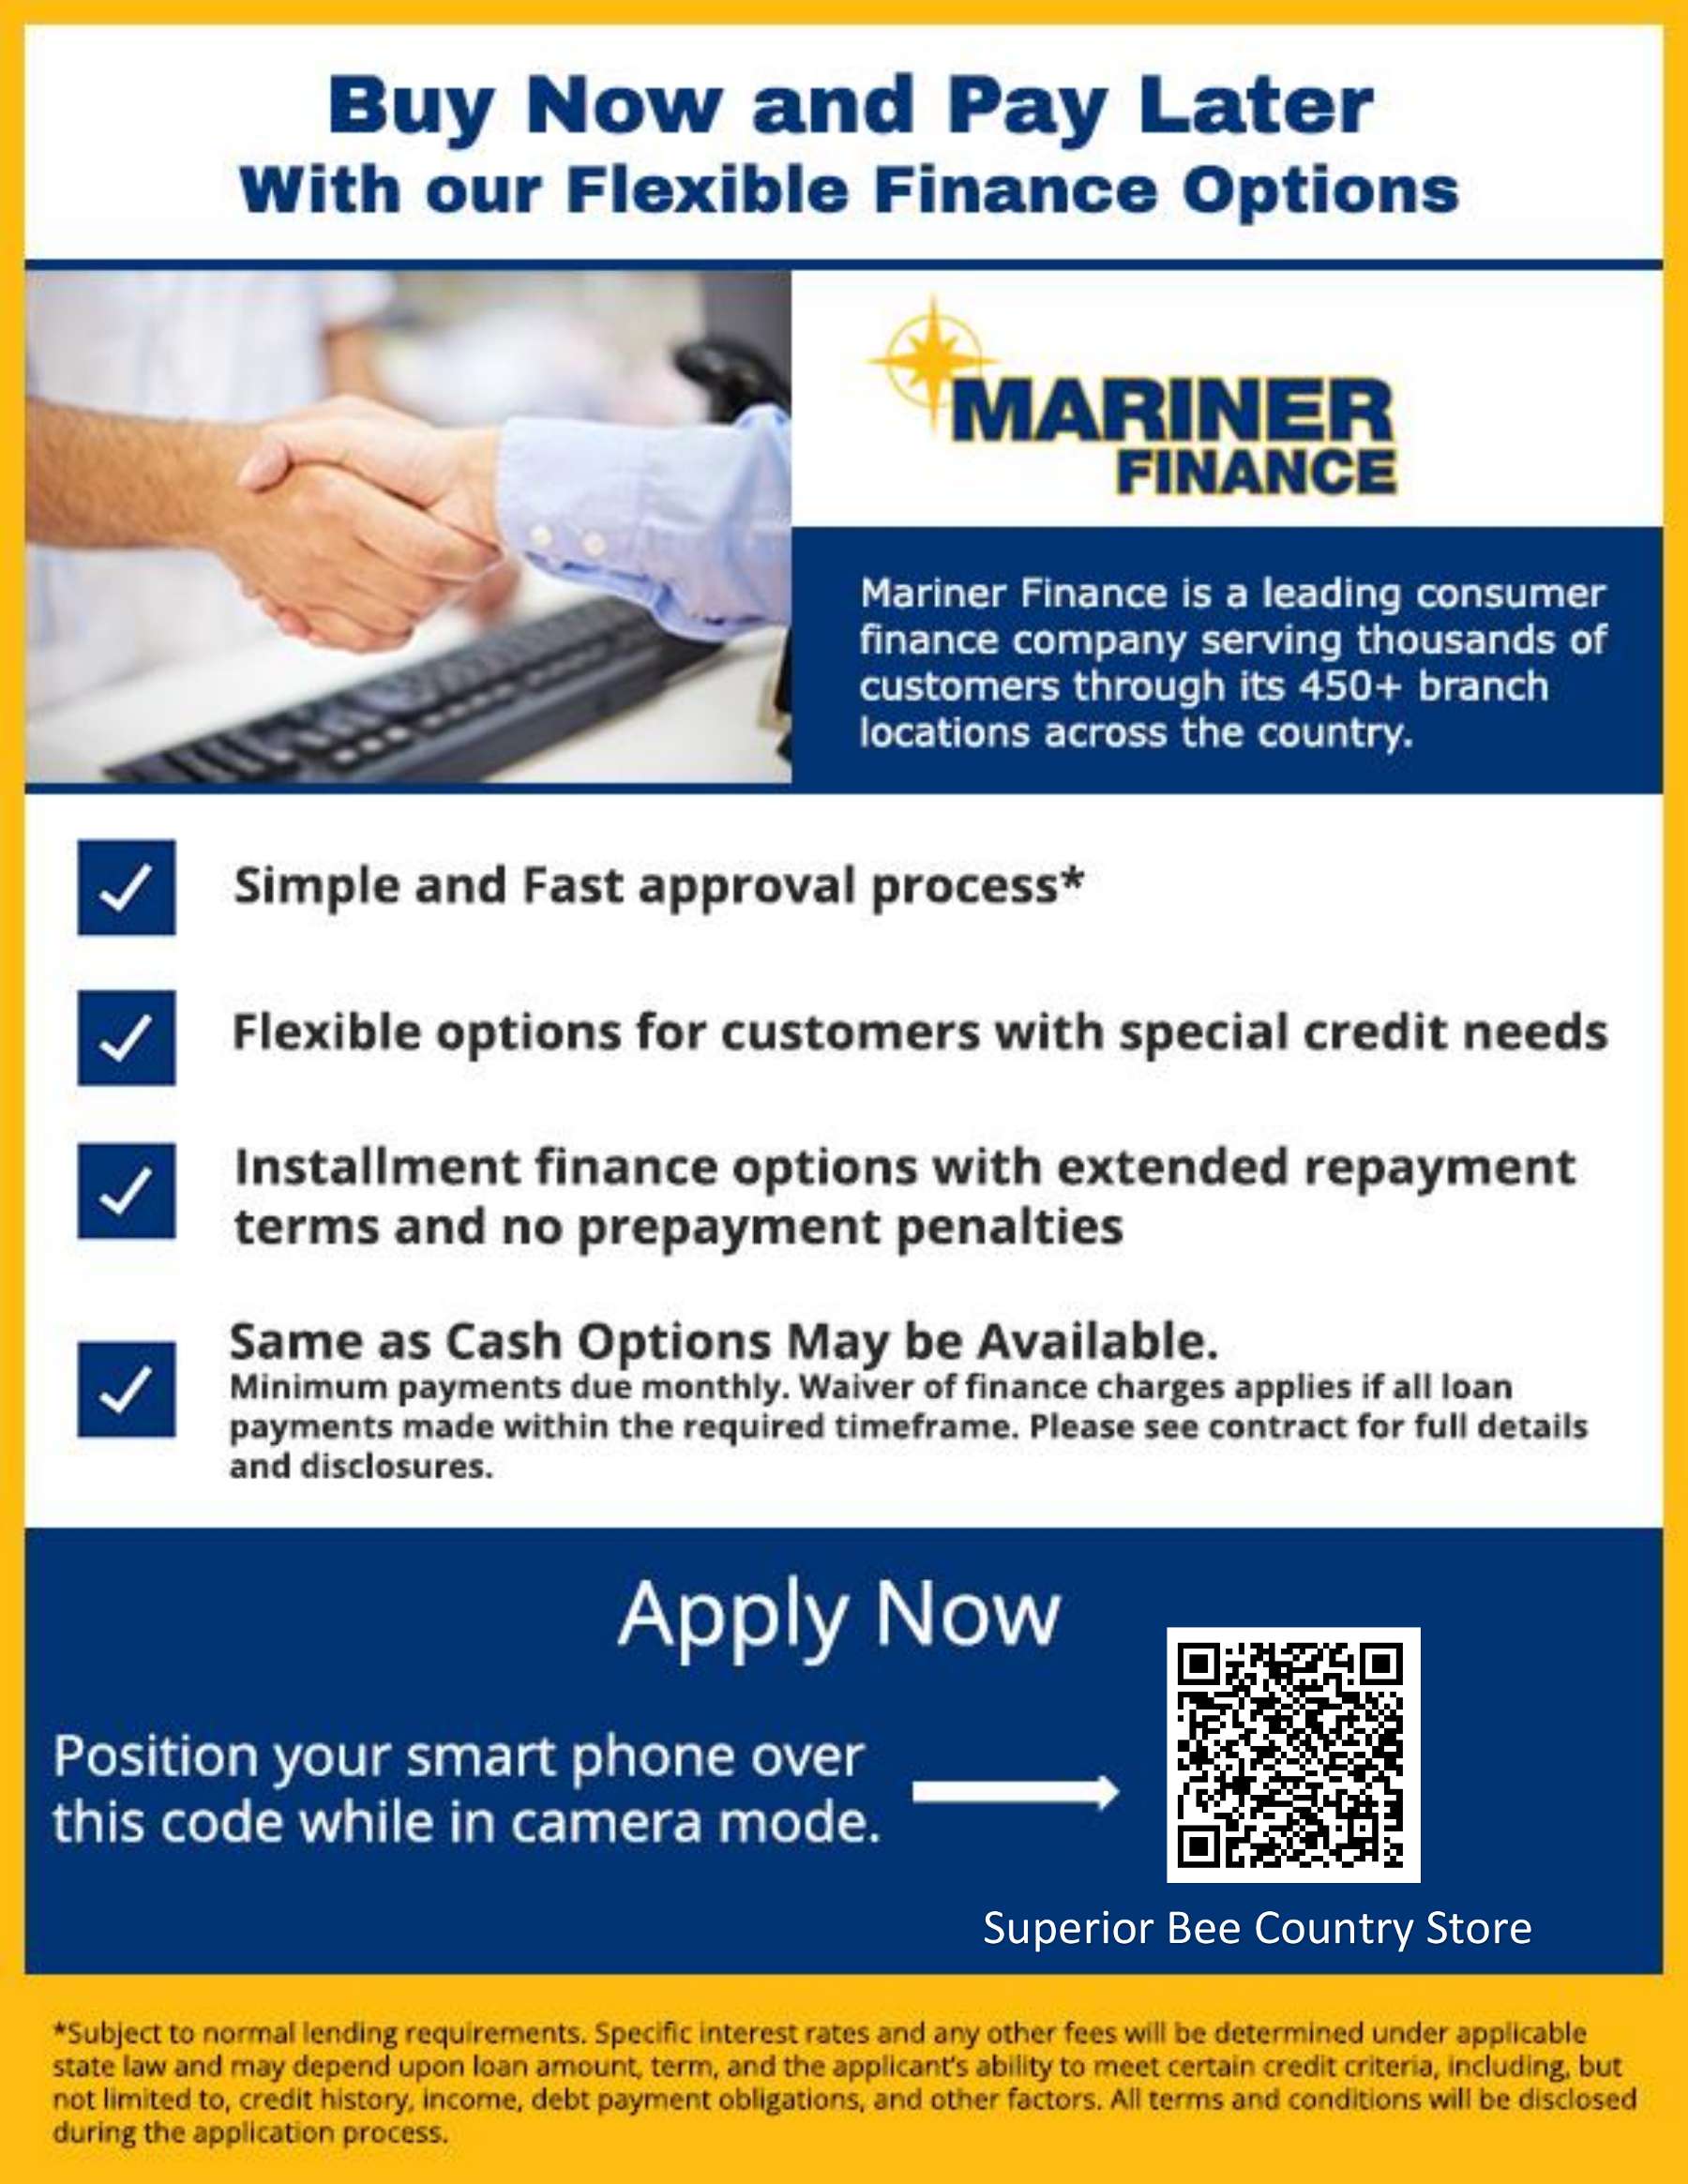 Financing information for Mariner Finance.